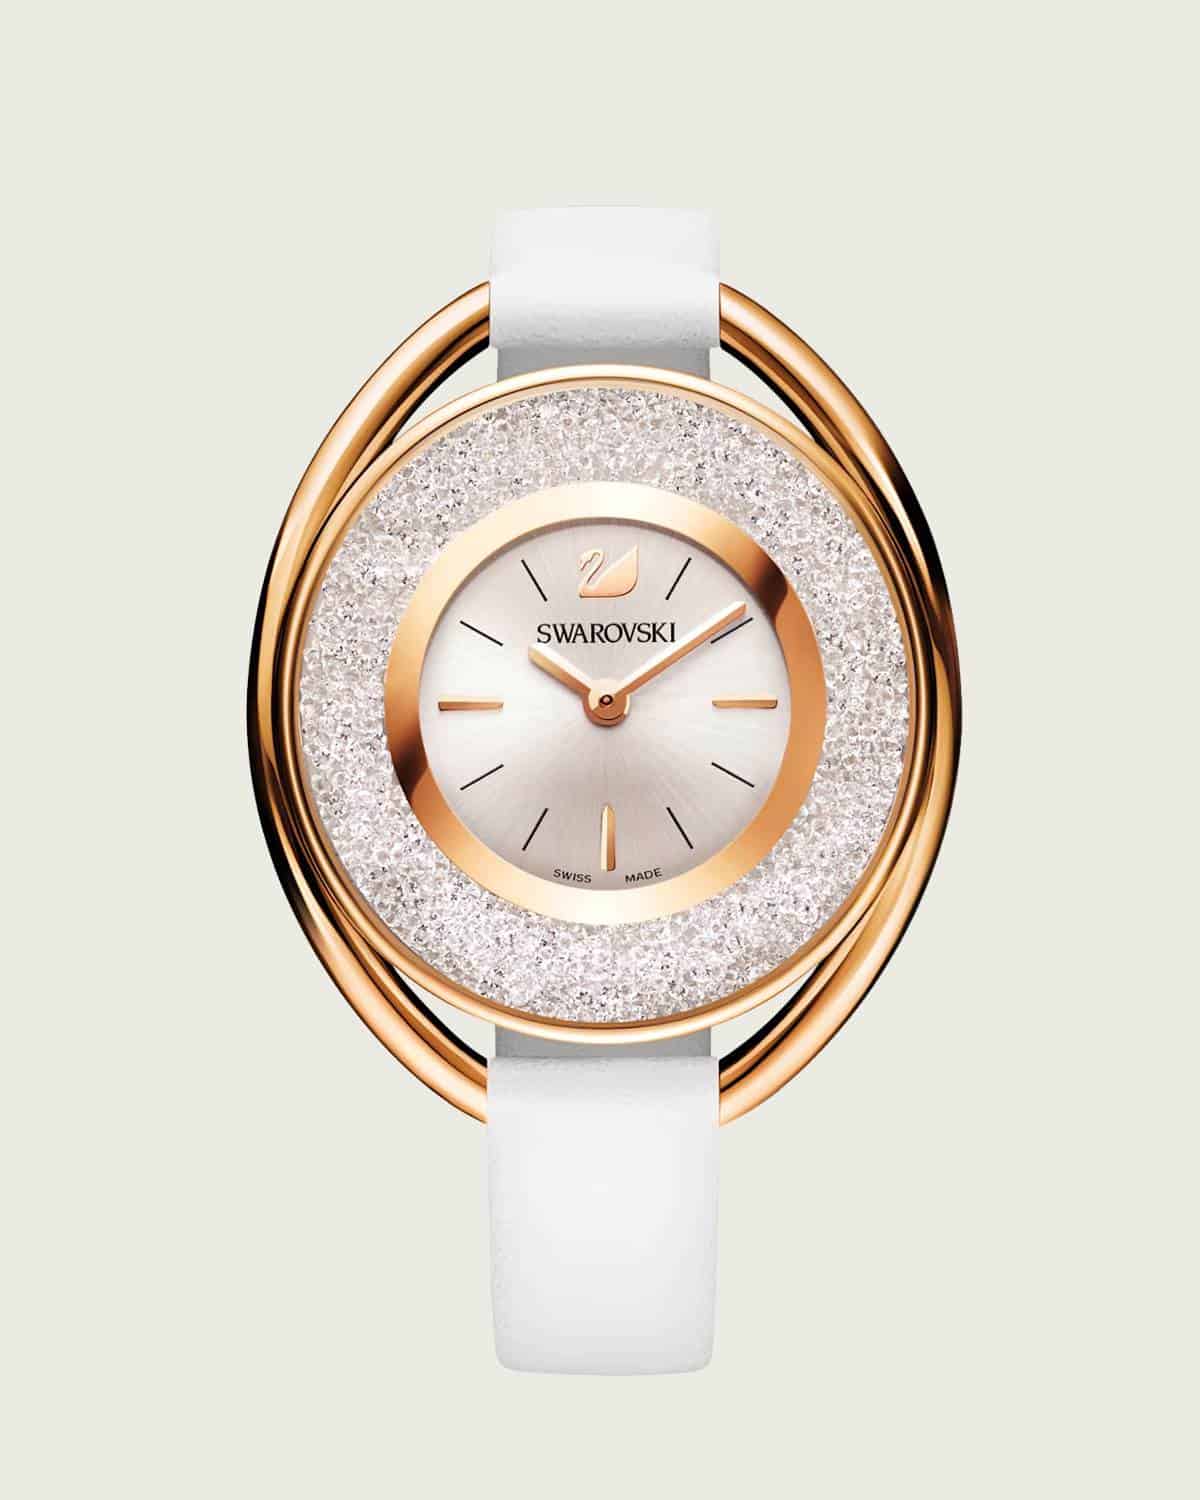 Đồng hồ Swarovski Crystalline Oval Gold Tone Bracelet Watch 5230946 được yêu thích.